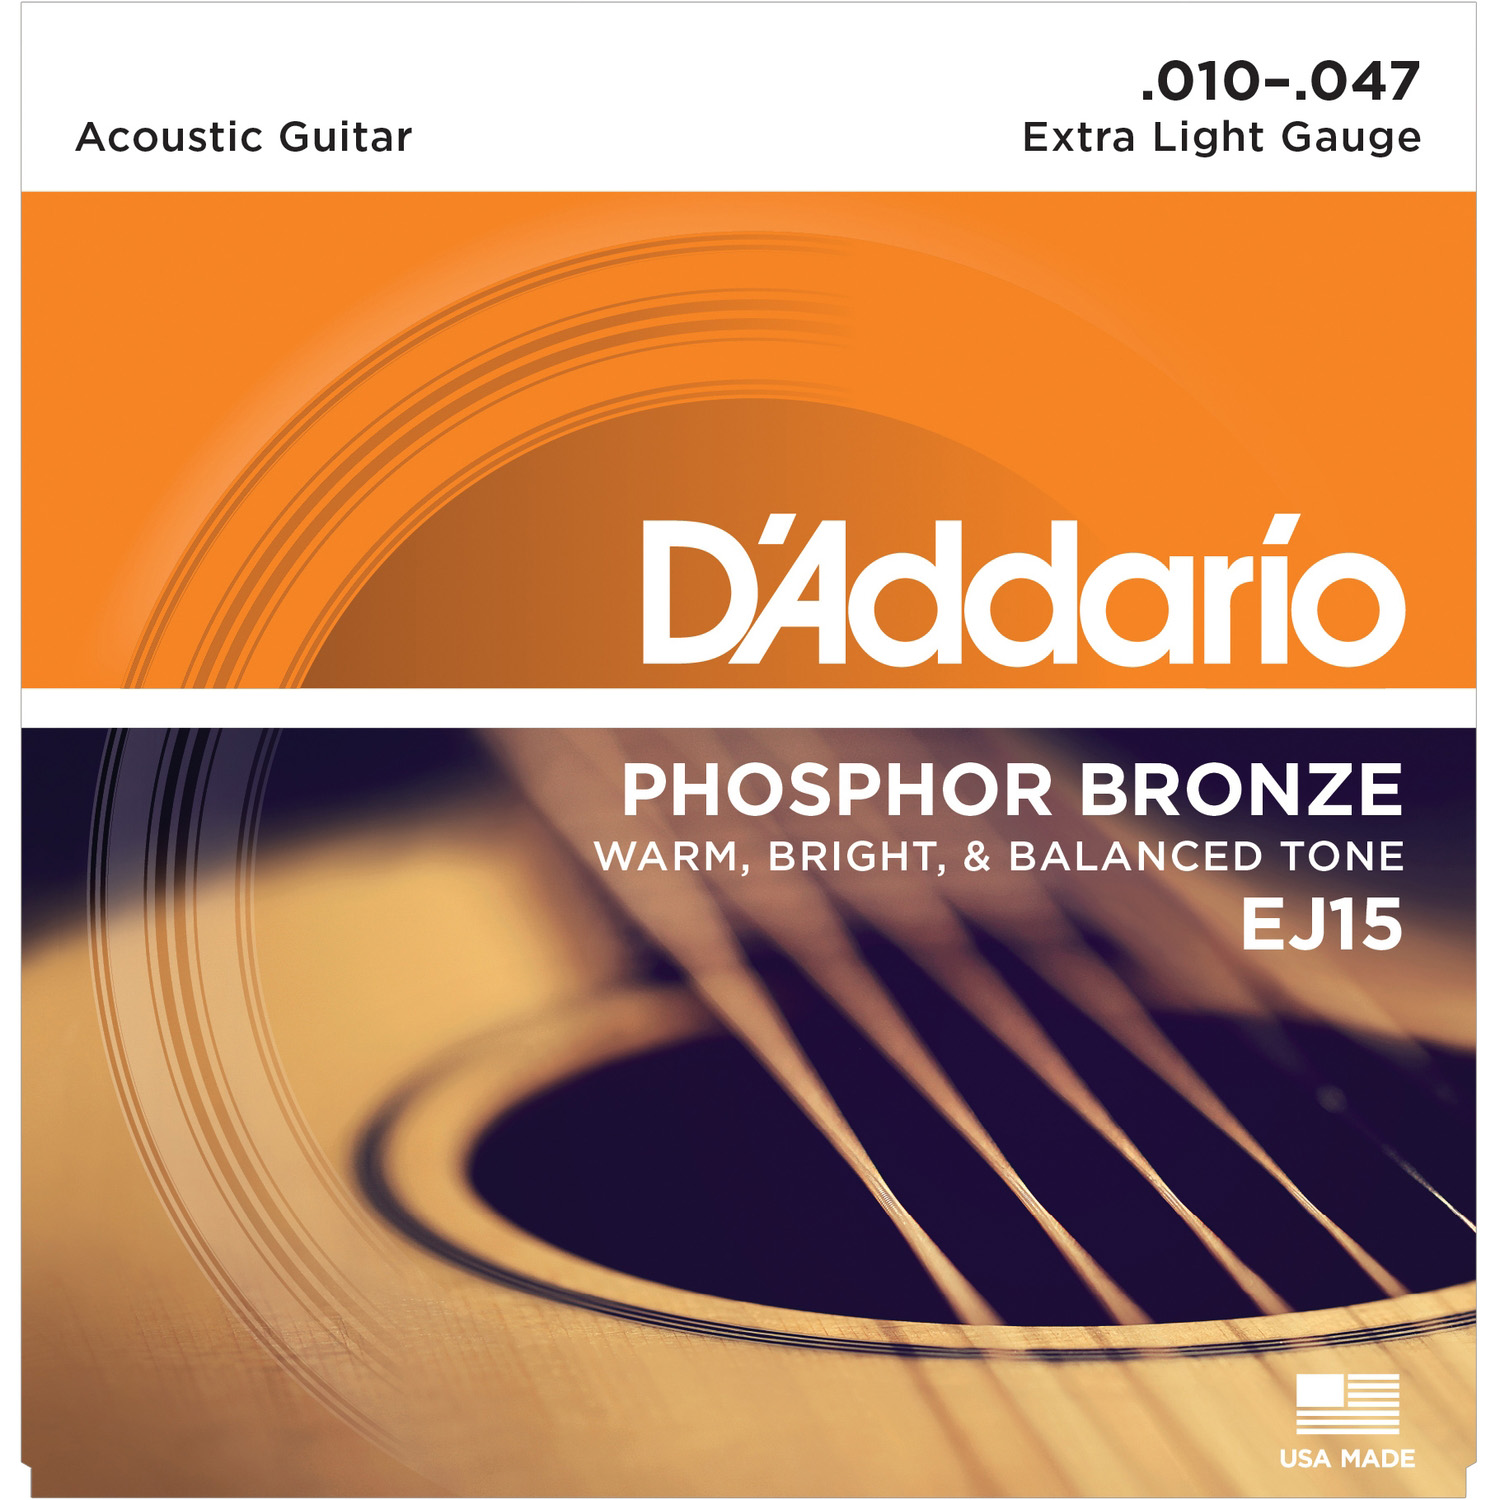 DAddario EJ15 Струны для акустических гитар